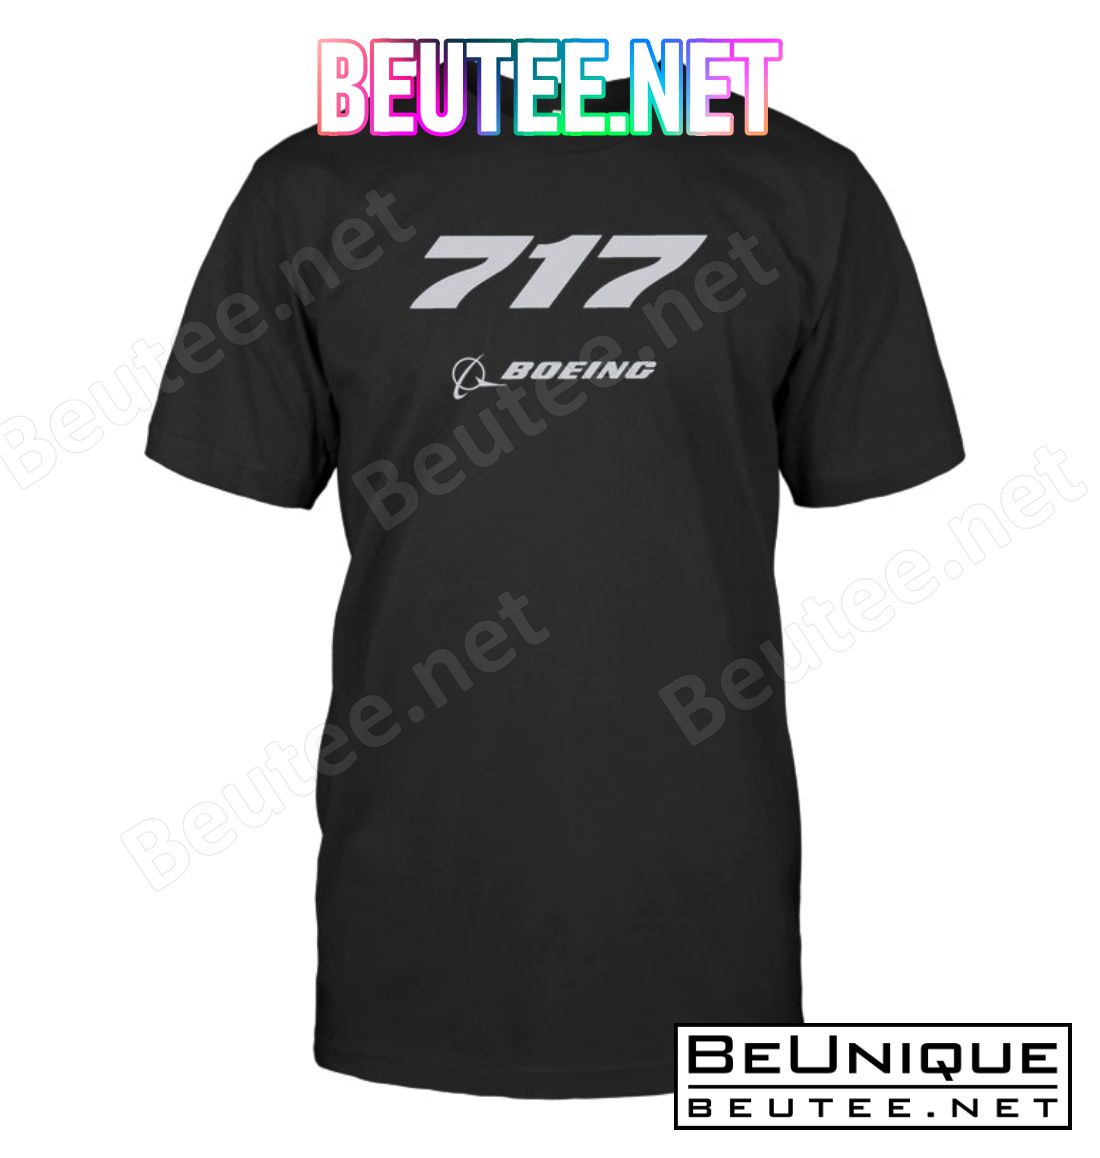 717 Boeing Logo Shirt